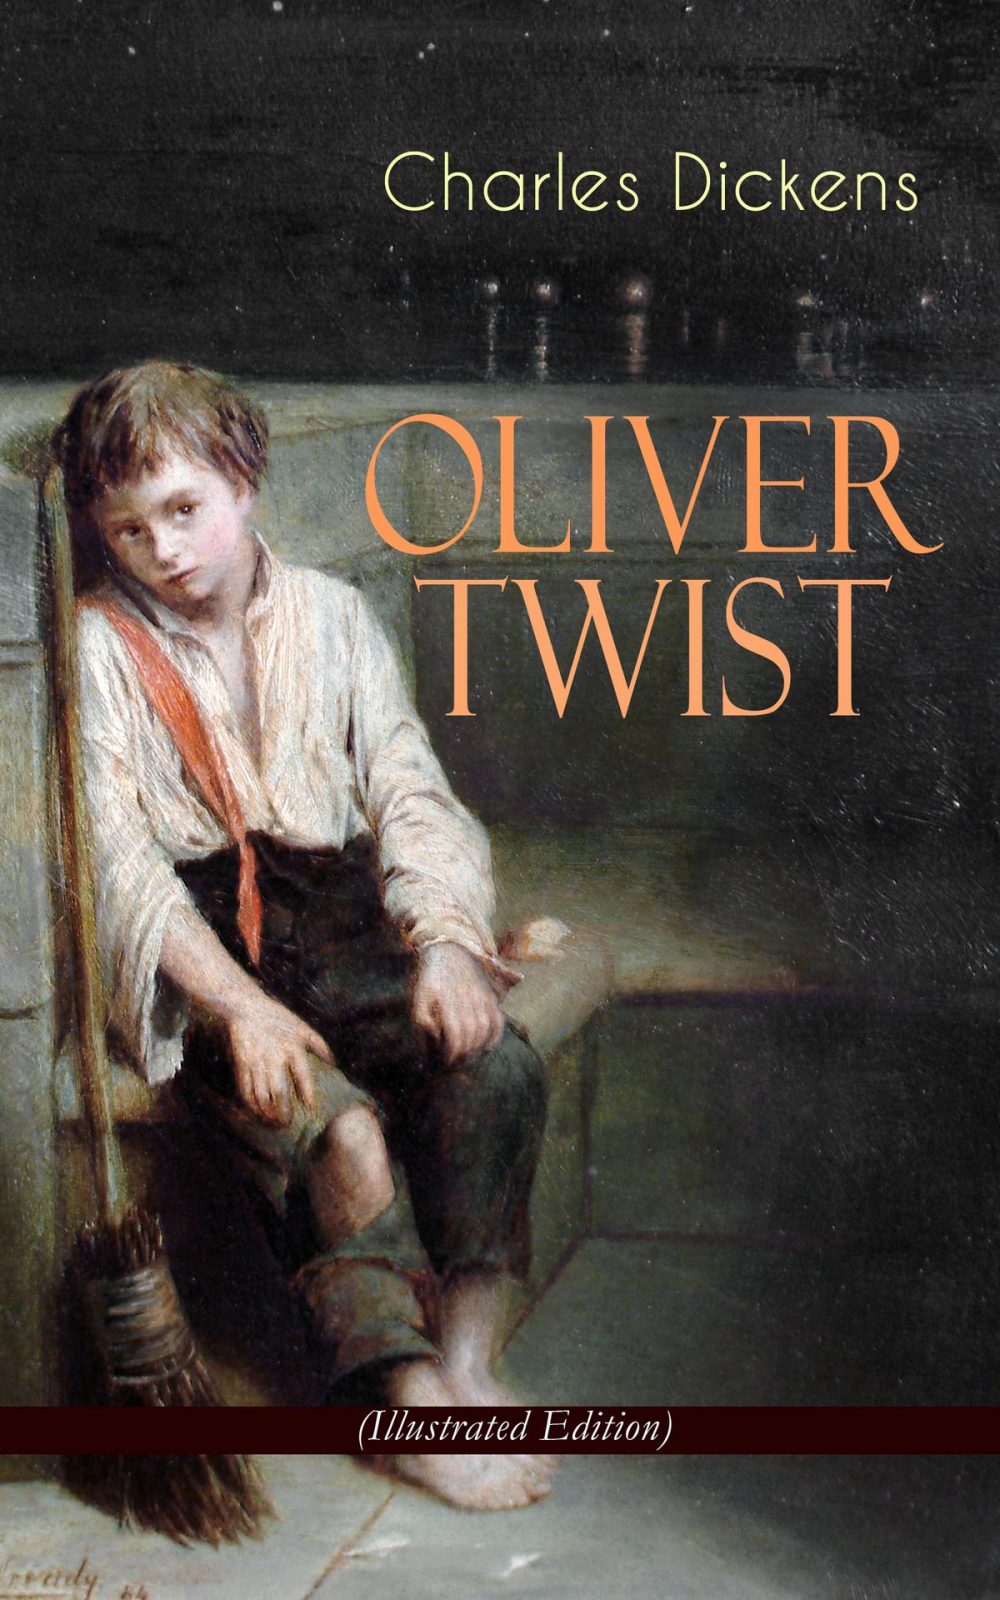 anh dai dien oliver twist e1588769474334 - Oliver Twist: Khi cuộc đời là một khúc dương cầm